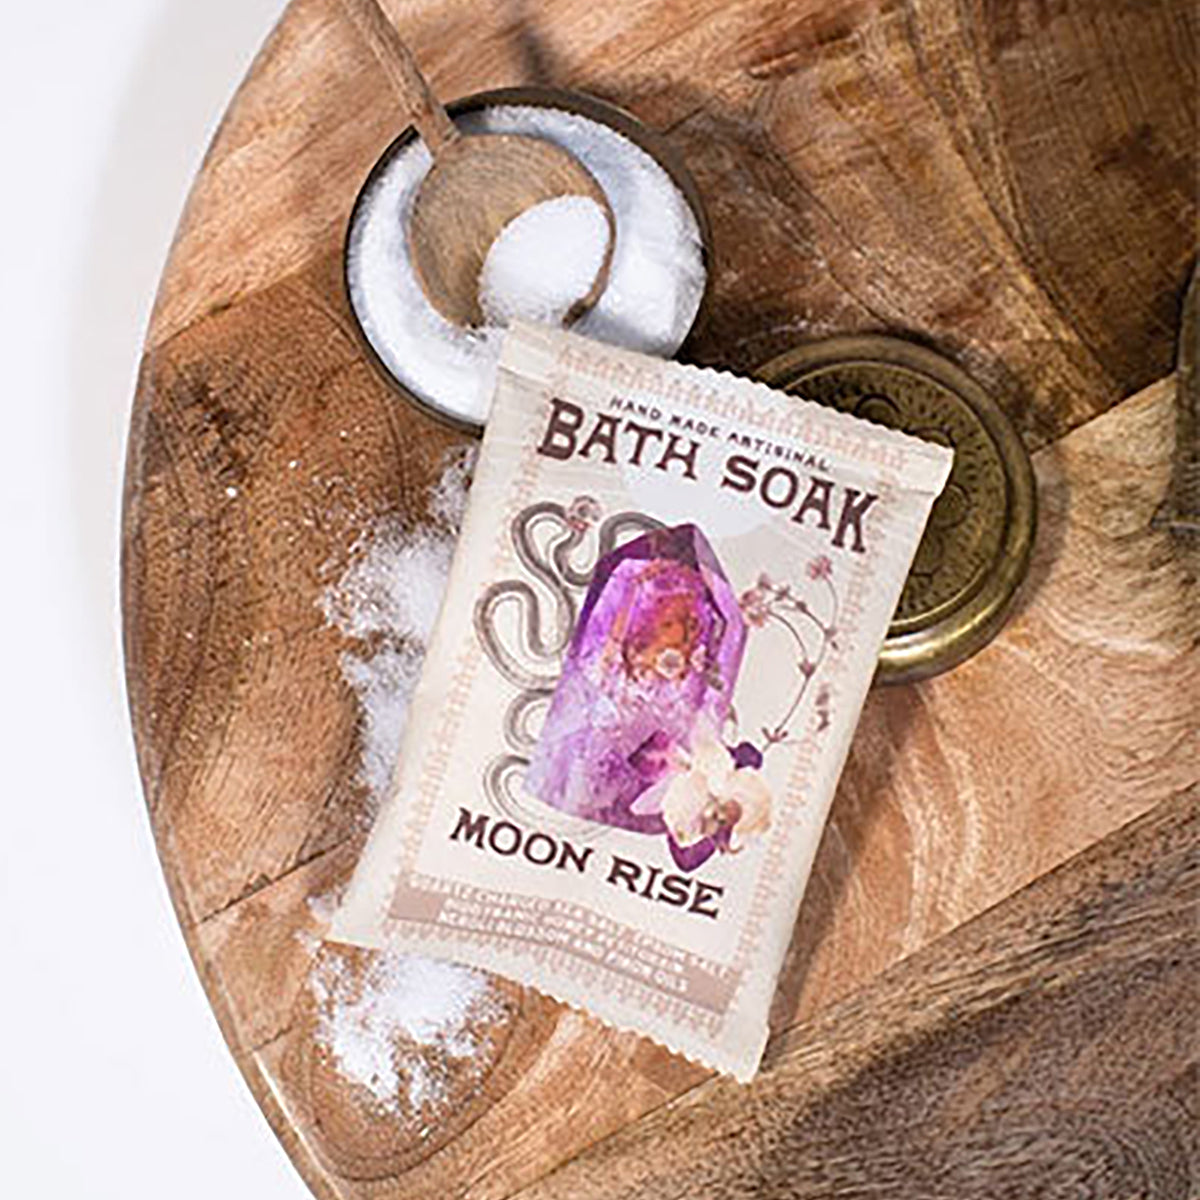 Moon Rise Bath Soak - honey, petitgrain, neroli blossom, and pinon oil